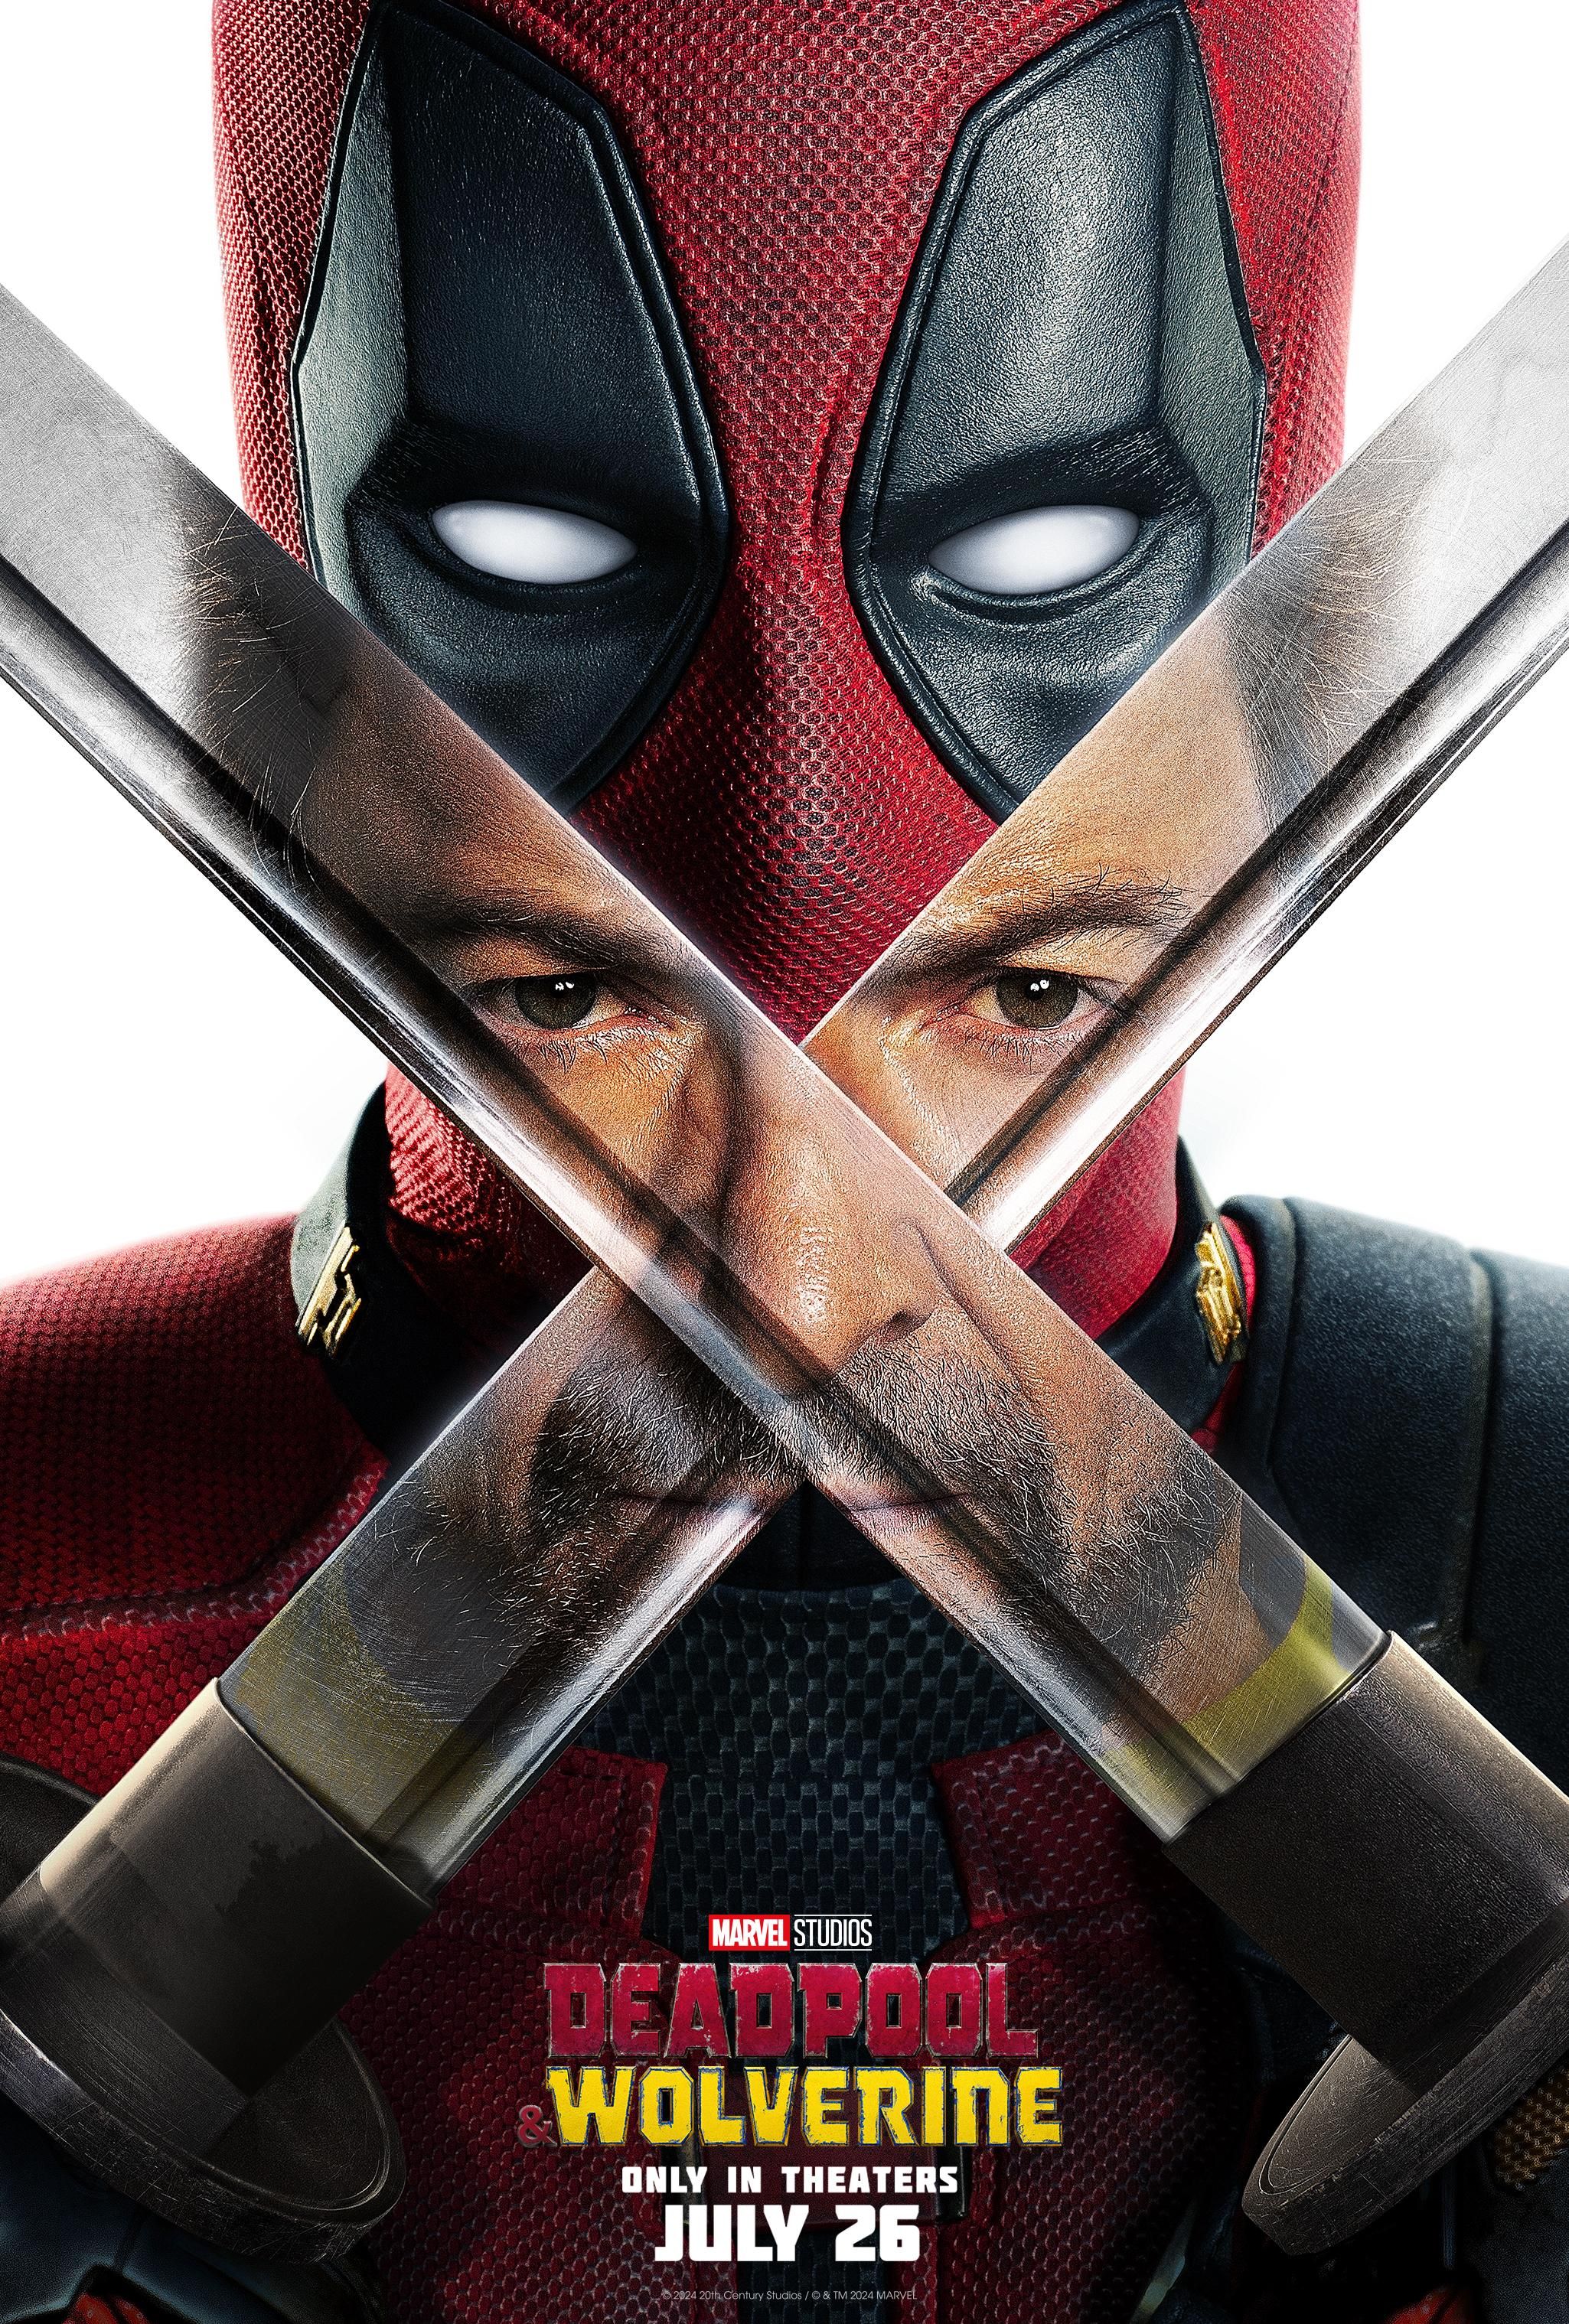 Plakat Deadpoola i Wolverine'a przedstawiający miecze Wade'a Wilsona i odbicie Hugh Jackmana